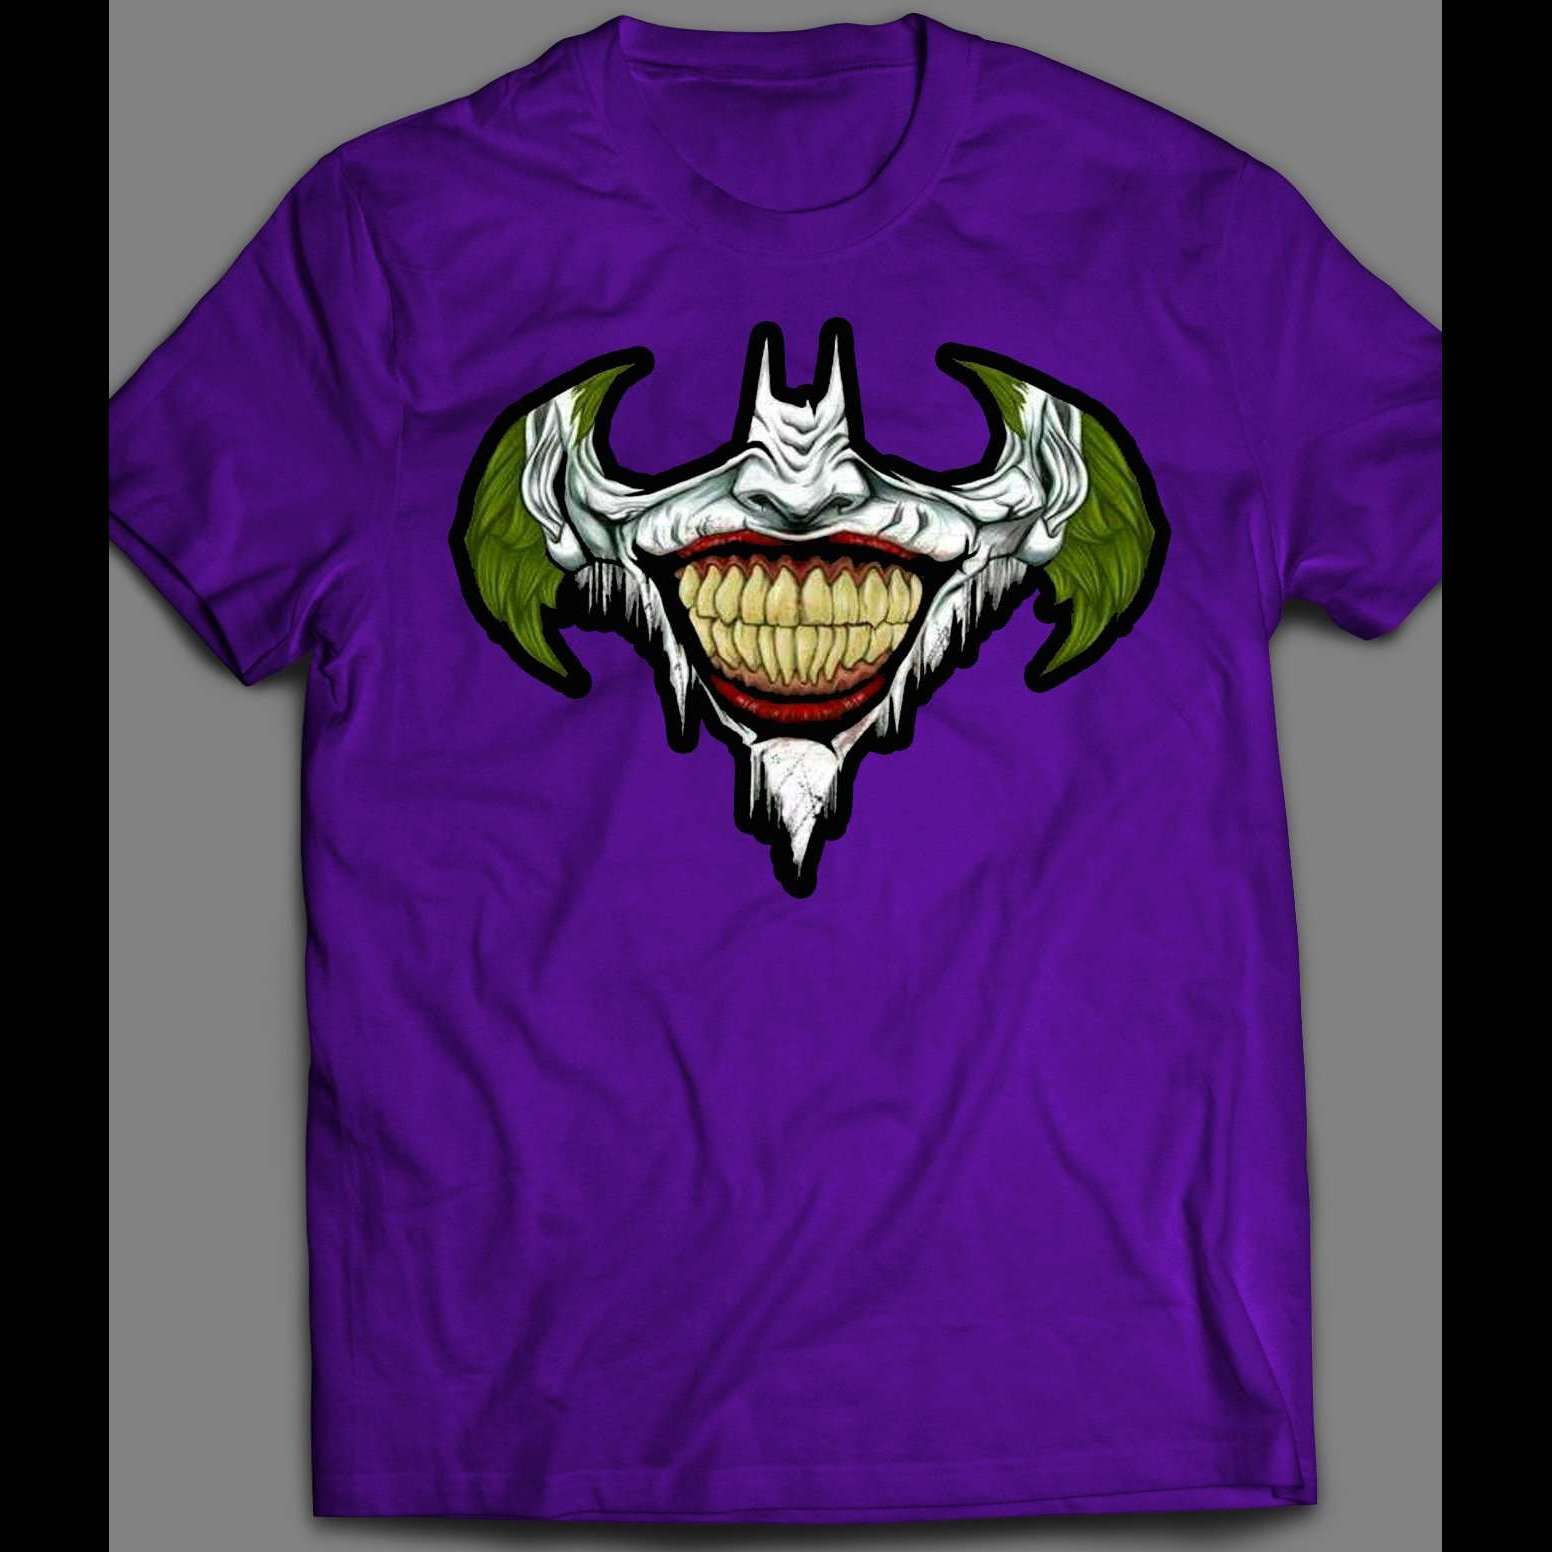 X SHIRT BATMAN CUSTOM THE Shirts ART OldSkool UP JOKER – LOGO MASH